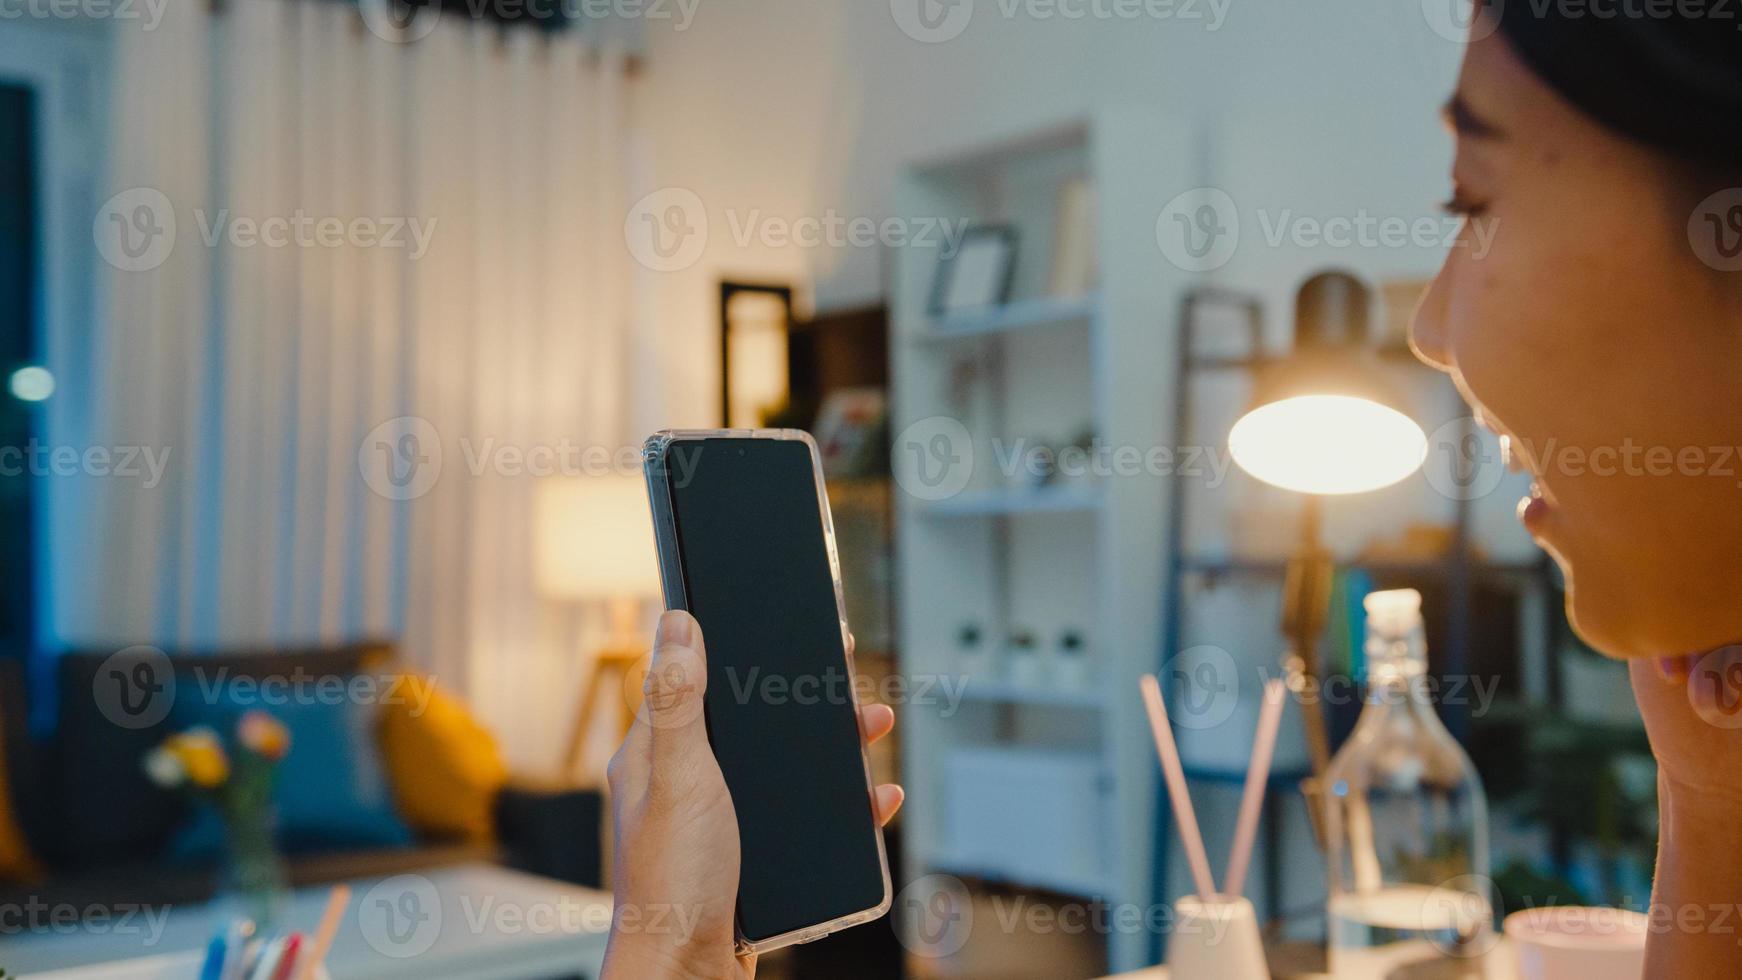 La joven asiática usa un teléfono inteligente con pantalla negra en blanco para mostrar texto publicitario mientras trabaja de manera inteligente desde su casa en la sala de estar por la noche. tecnología chroma key, concepto de diseño de marketing. foto